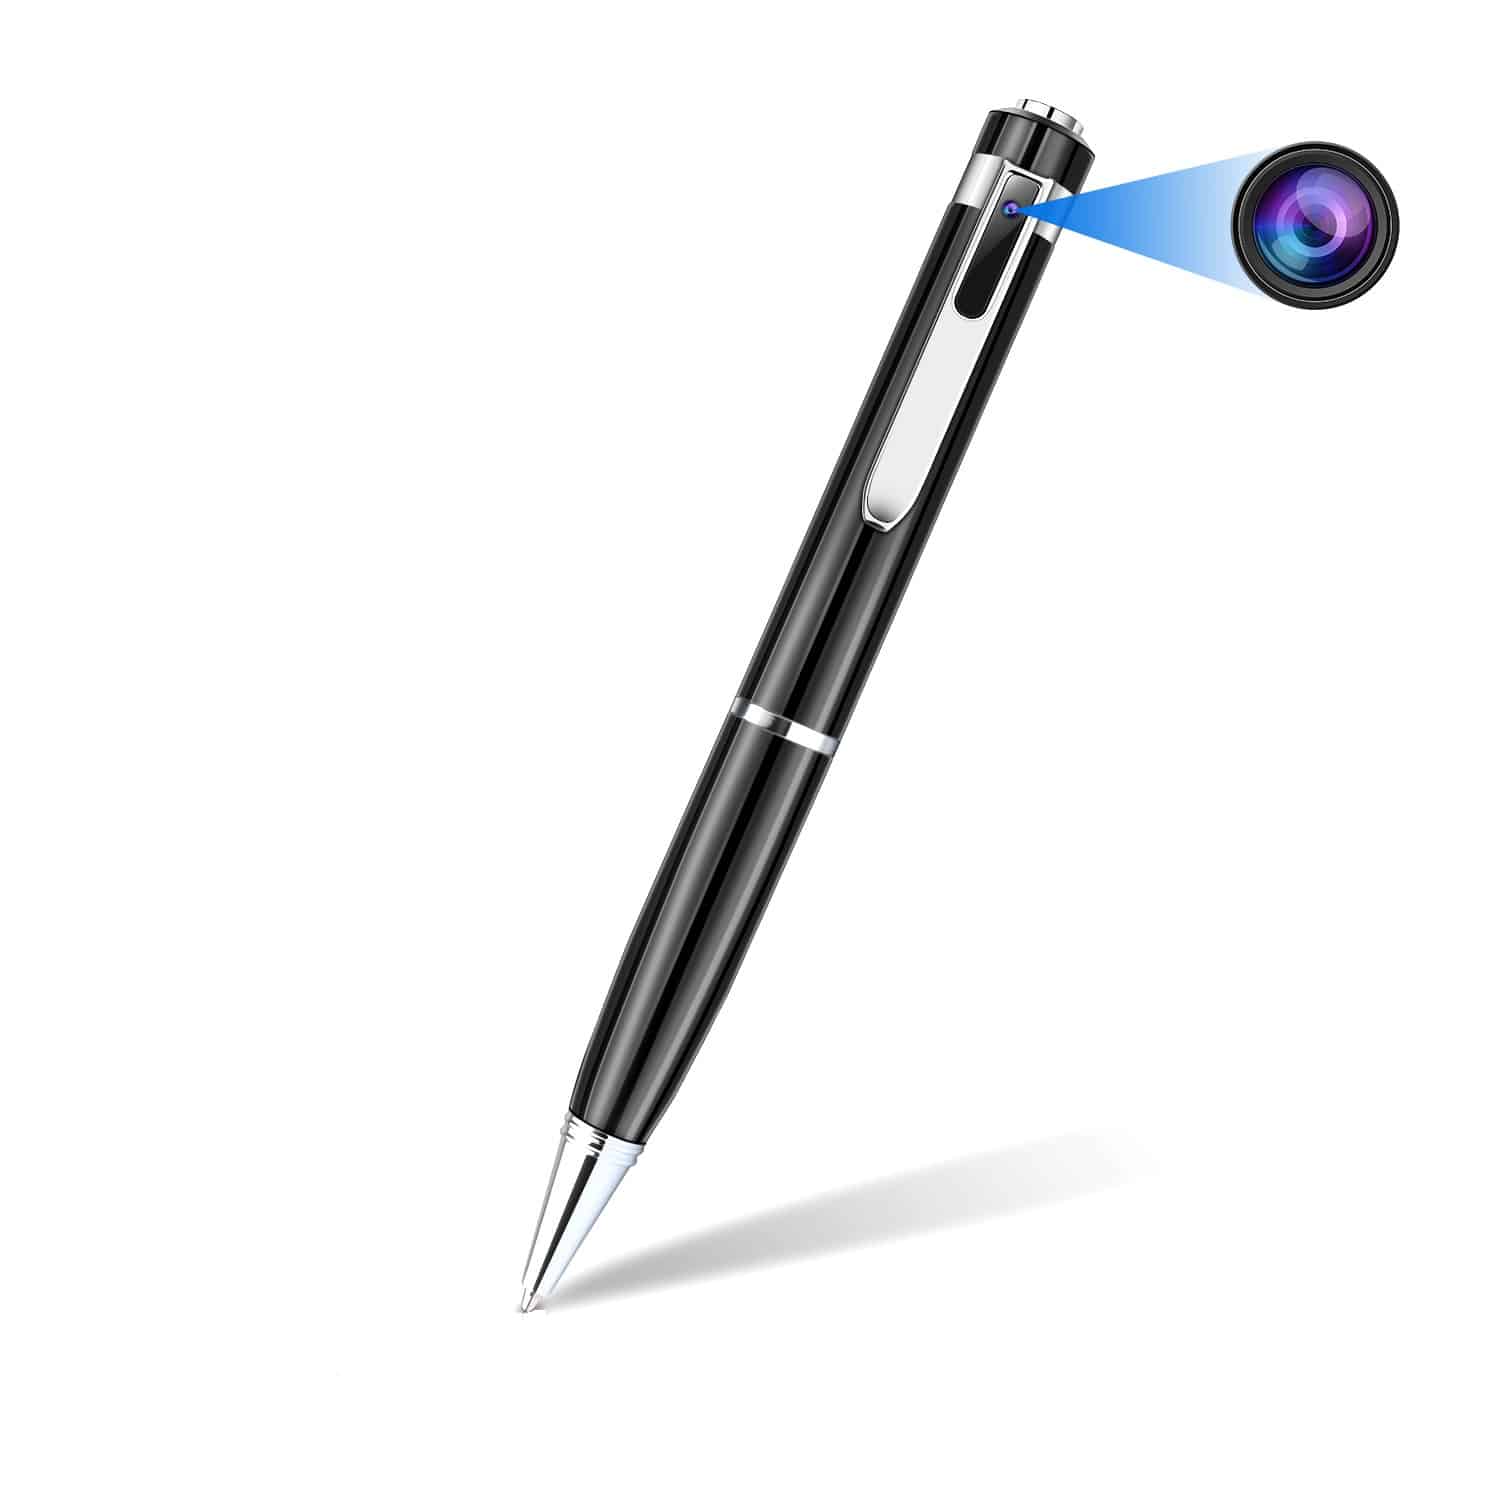 Comprar bolígrafo espía HD: Precio y descuentos - Cámarasespías.es